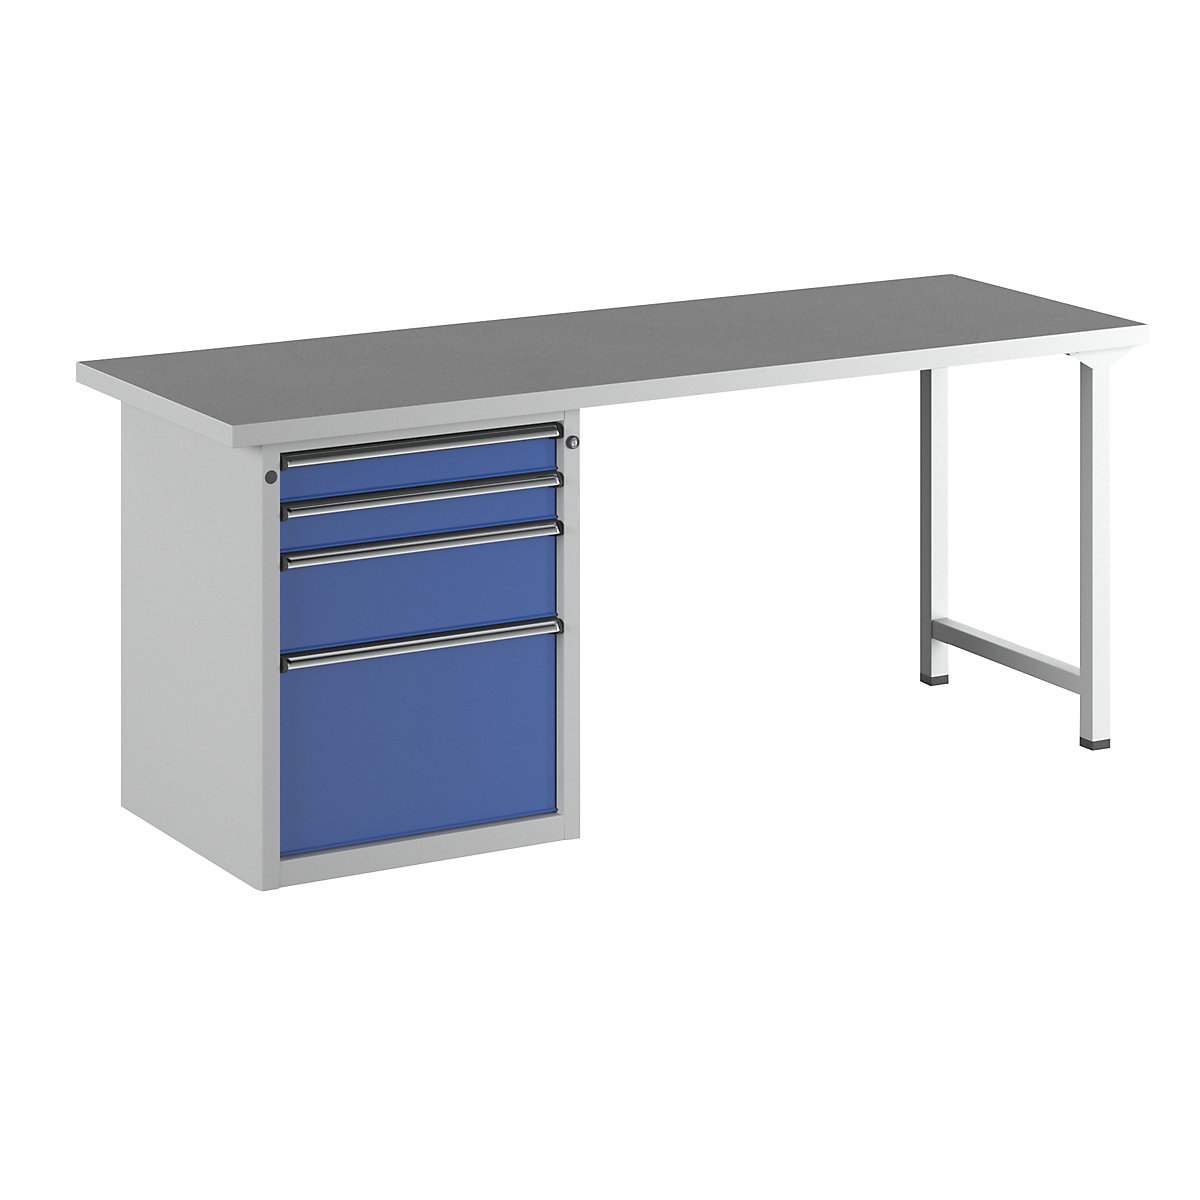 Dílenský stůl s rámovou konstrukcí – ANKE, 4 zásuvky, 2 x 90, 1 x 180, 1 x 360 mm, univerzální deska, šířka 2000 mm-12